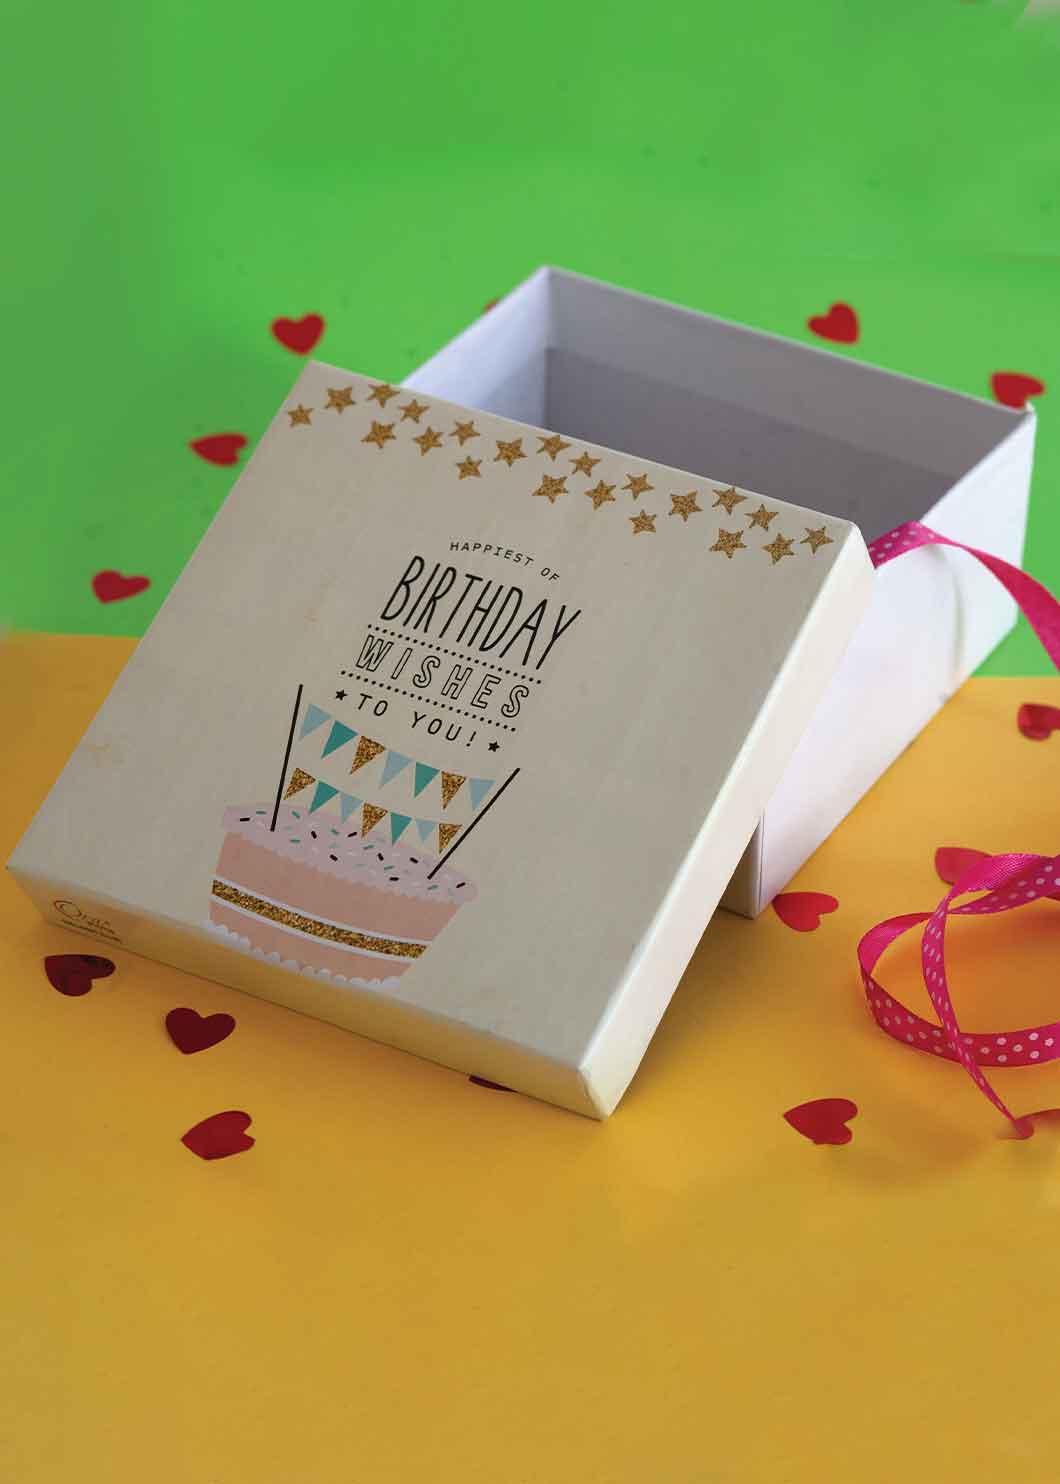 Birthday Celebration Design Box for Packing